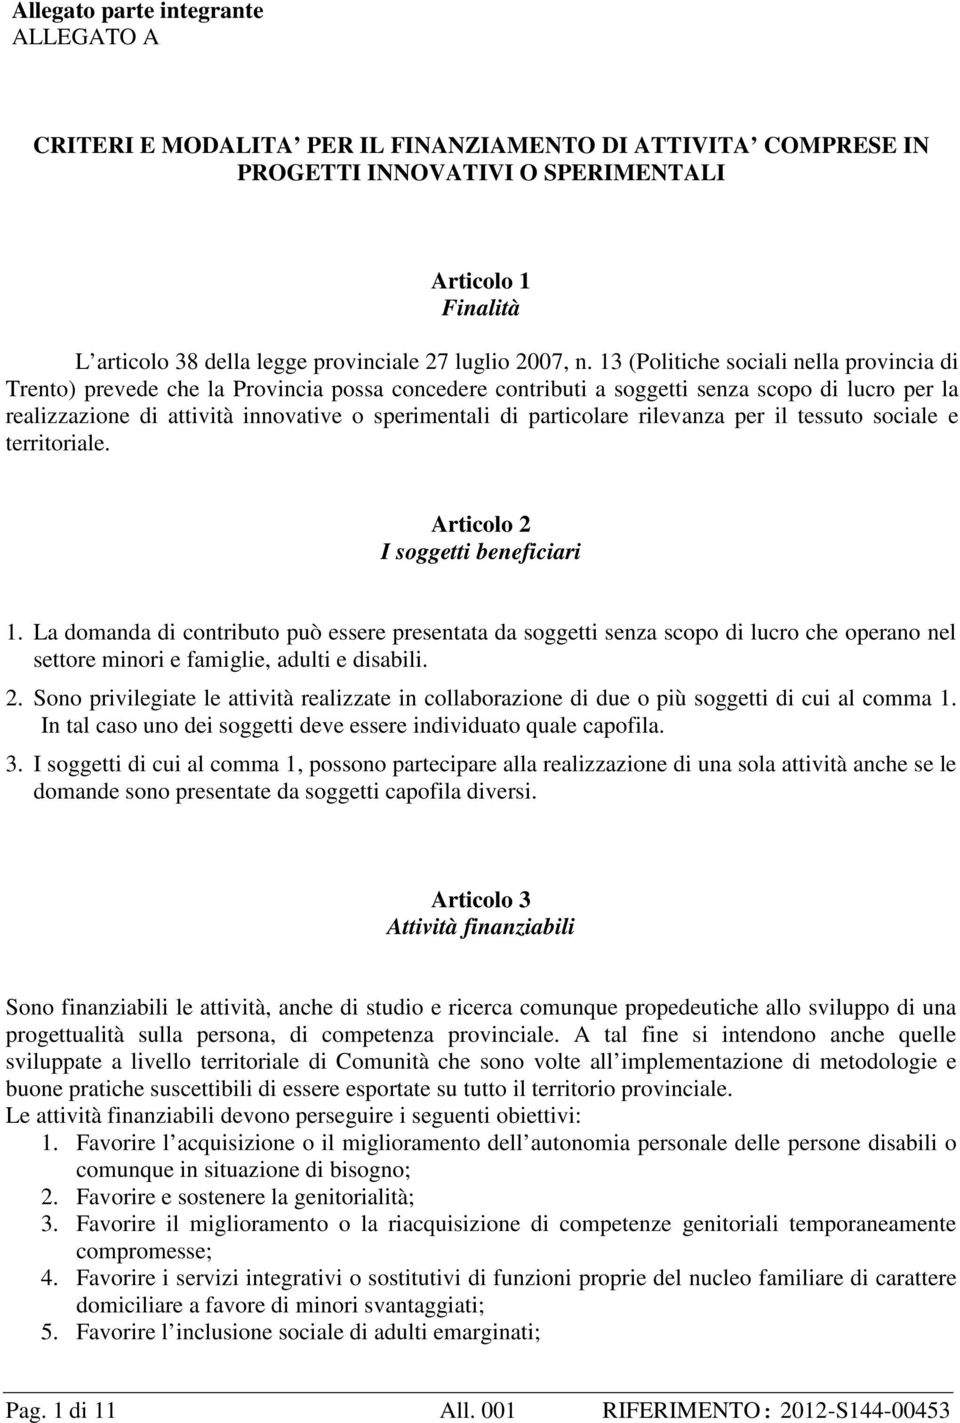 13 (Politiche sociali nella provincia di Trento) prevede che la Provincia possa concedere contributi a soggetti senza scopo di lucro per la realizzazione di attività innovative o sperimentali di